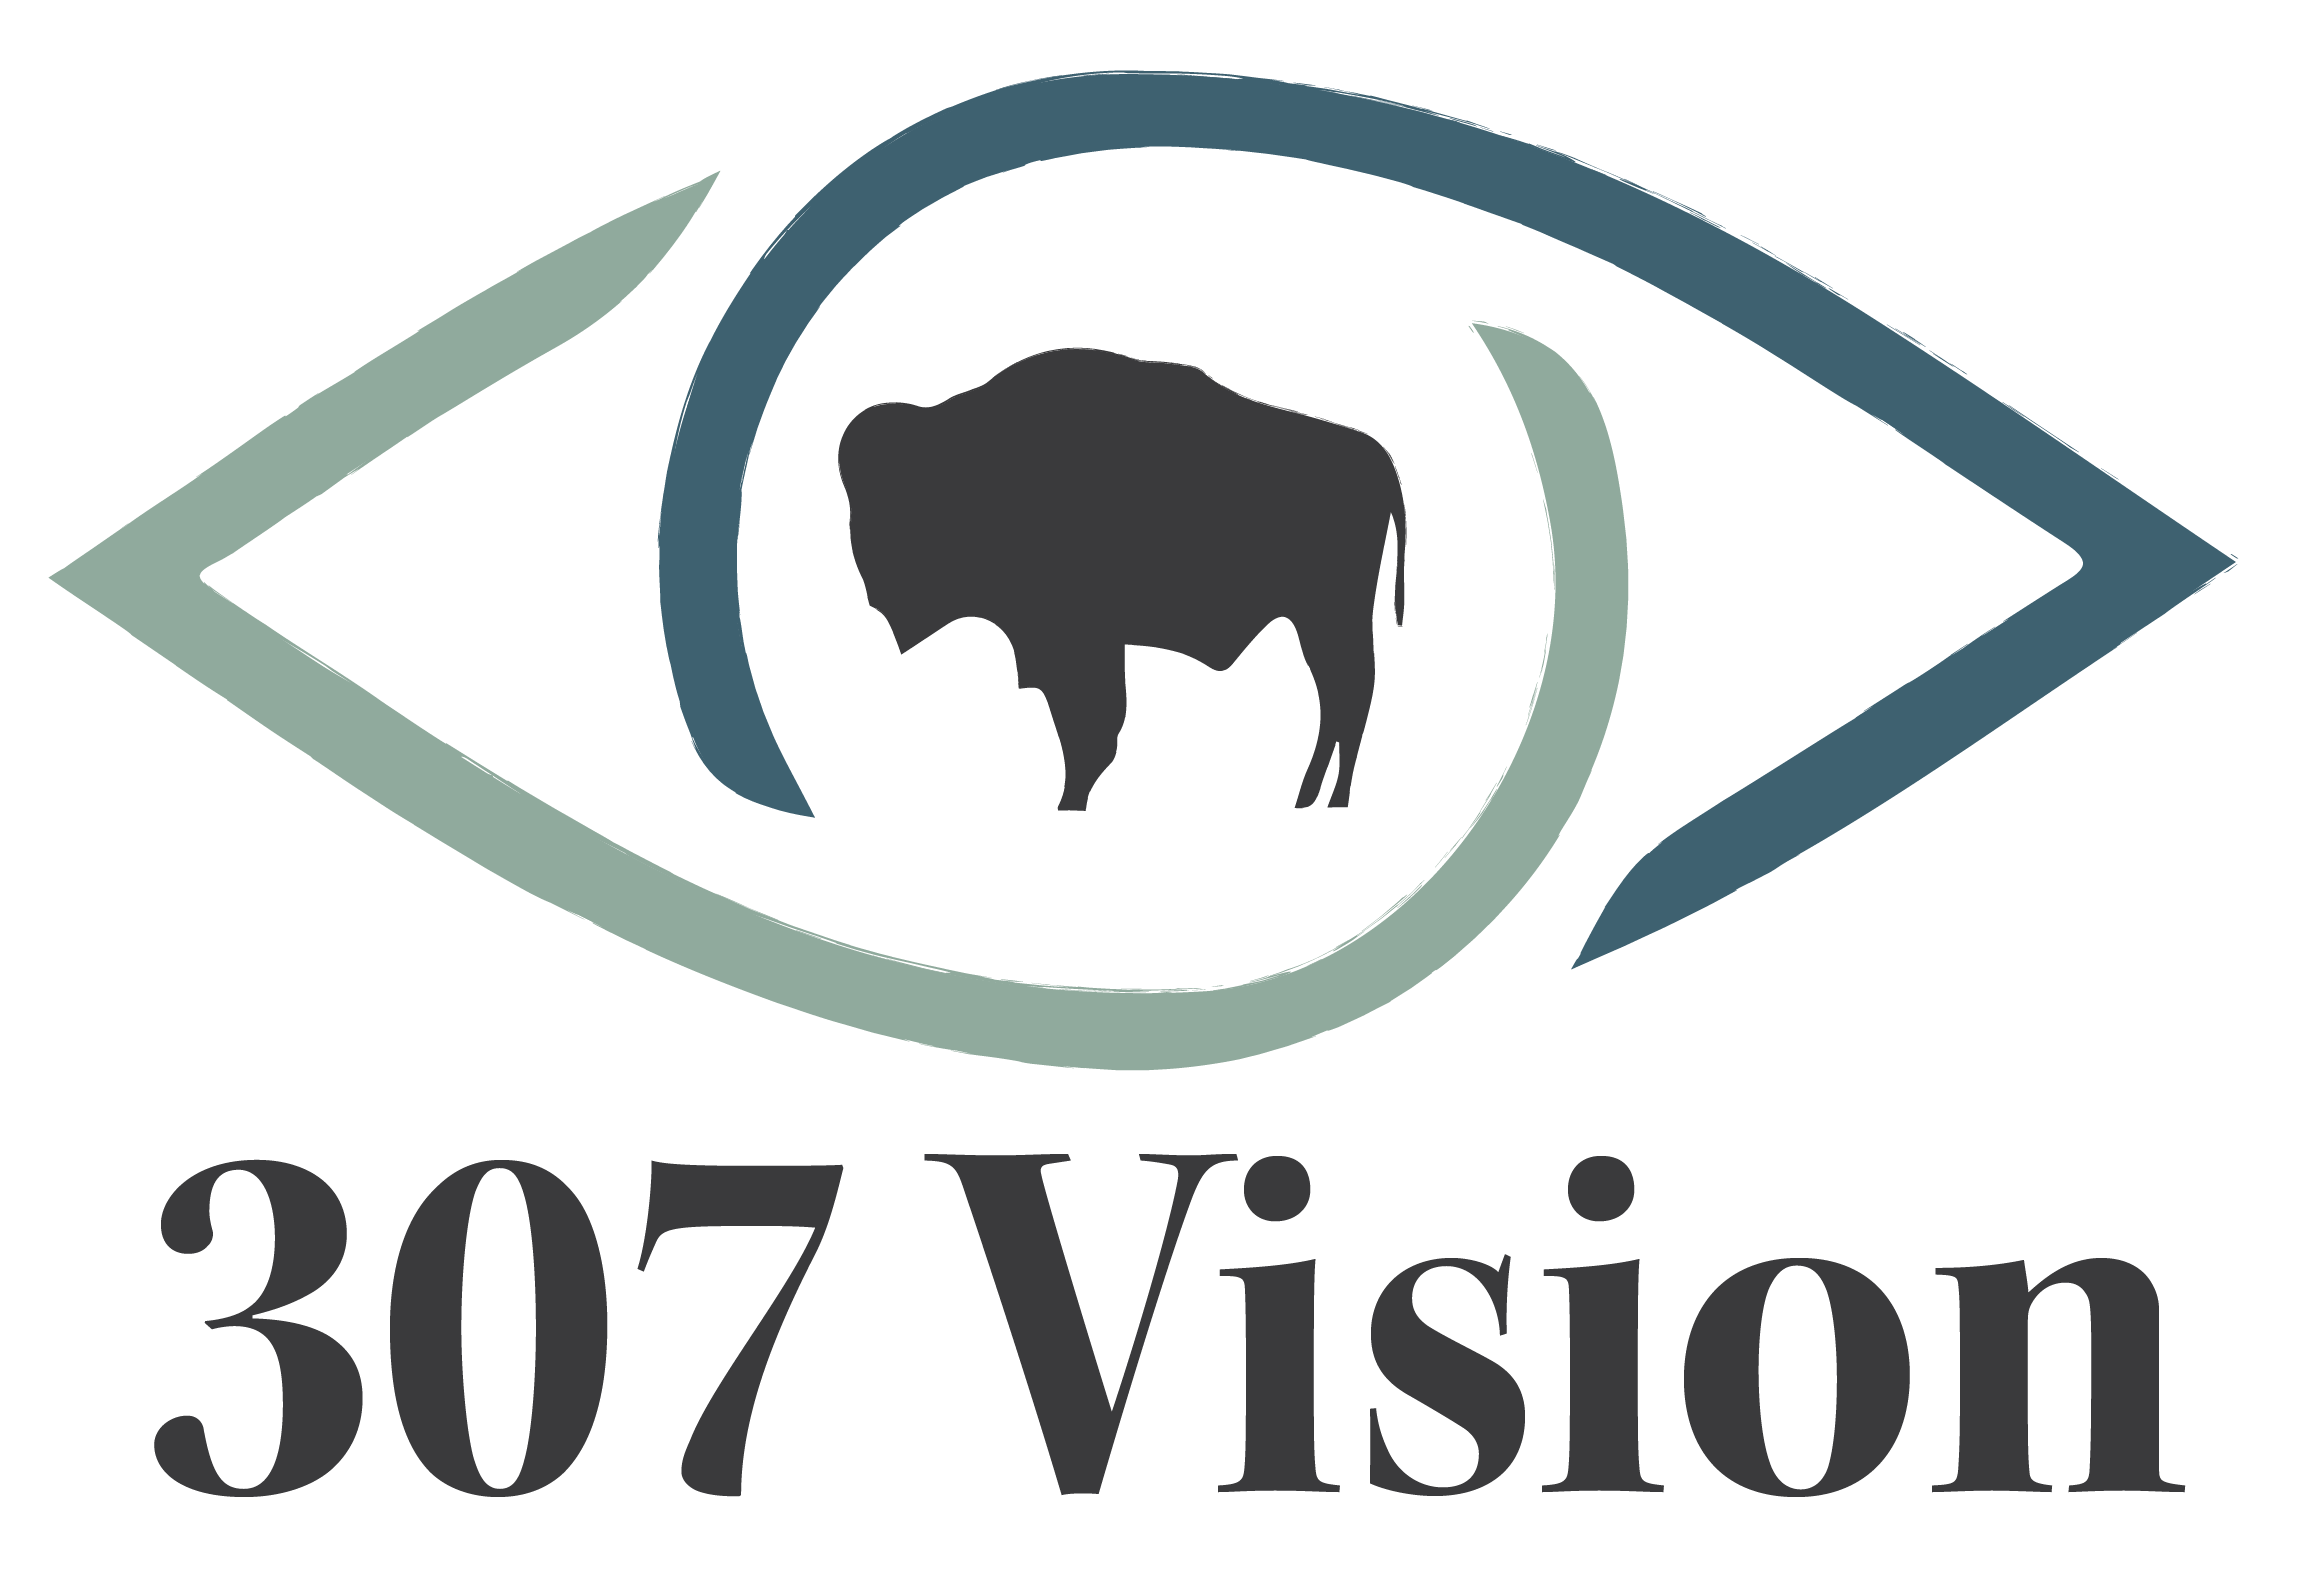 307 Vision logo